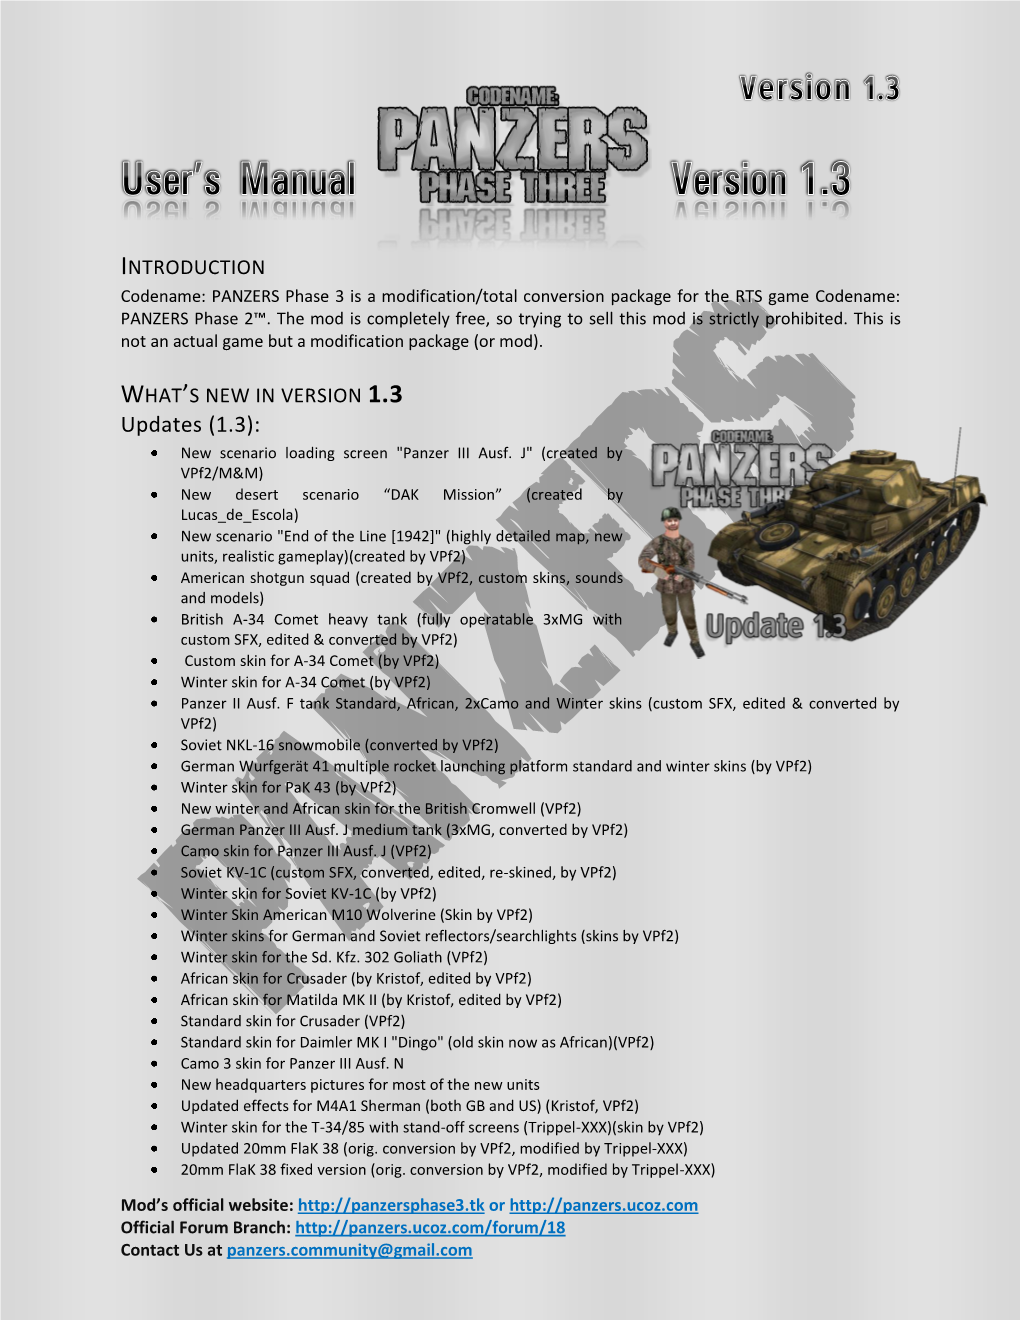 Updates (1.3): New Scenario Loading Screen "Panzer III Ausf